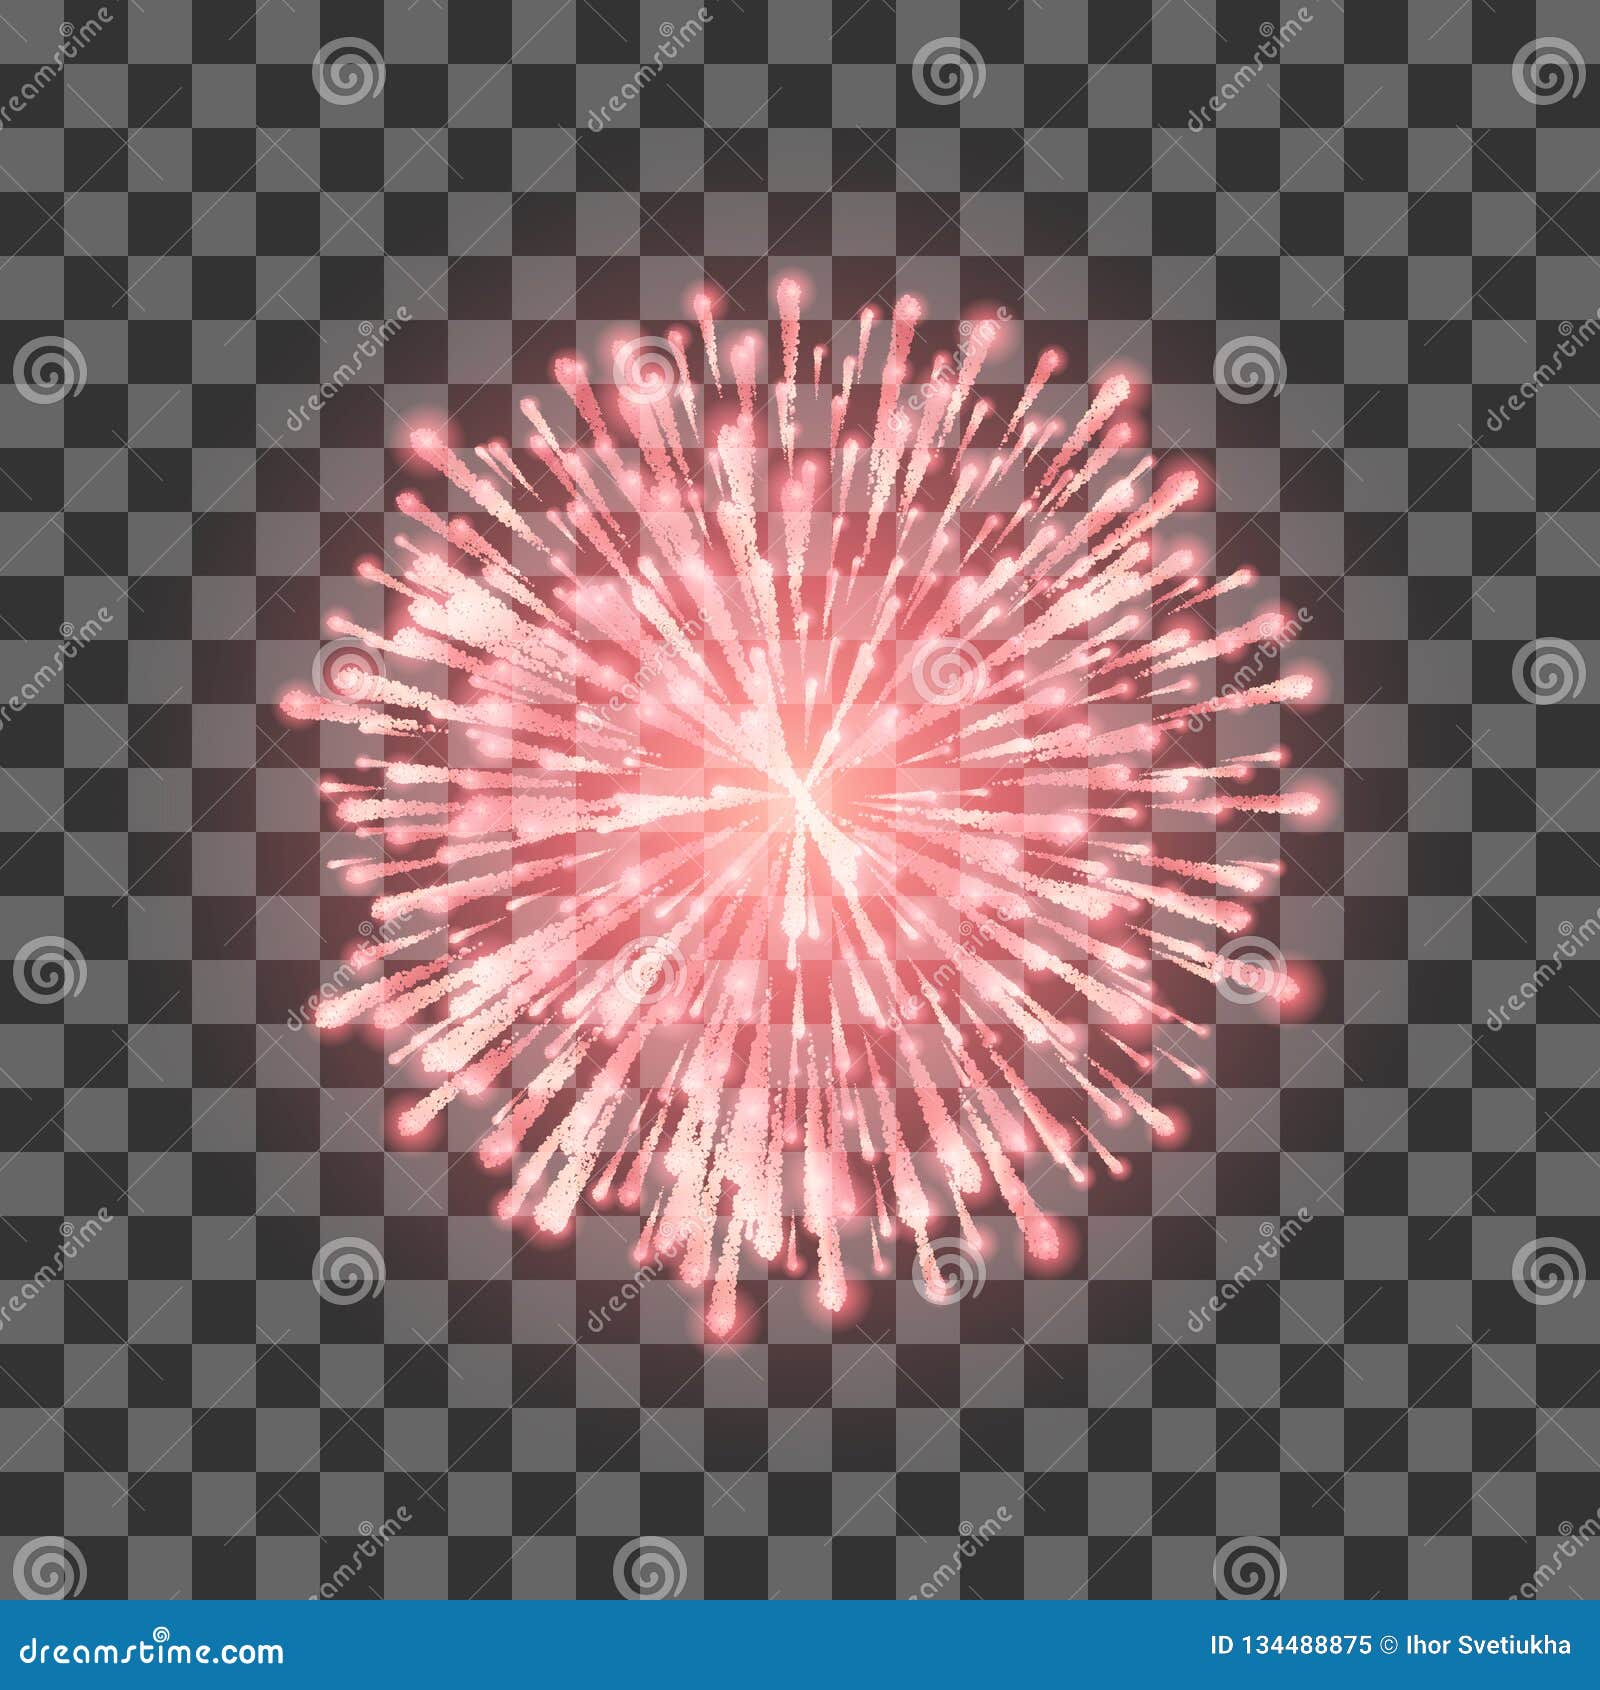 red fireworks. festival beautiful firework.  llustration on transparent background